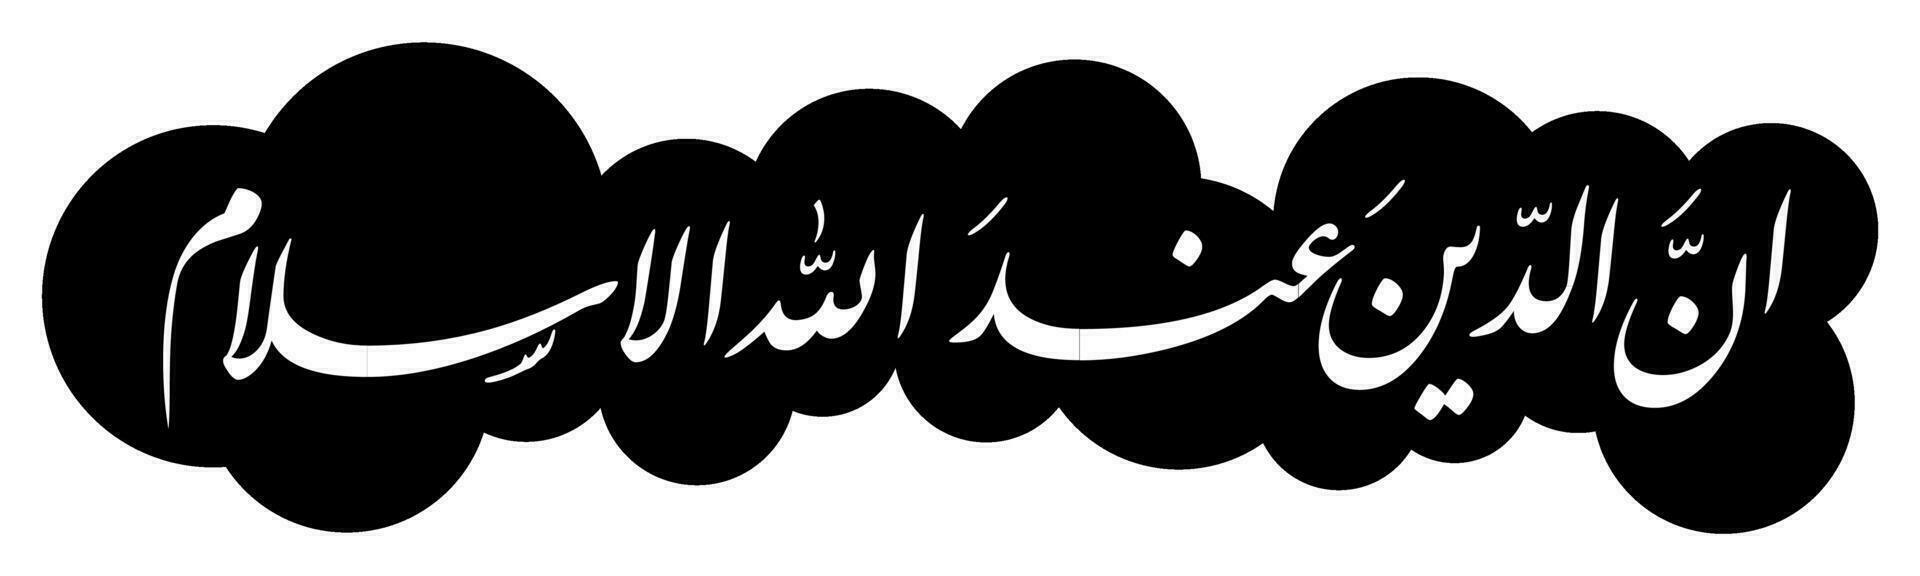 Al Quran caligrafía, Traducción en verdad el religión antes de Alá es islam vector